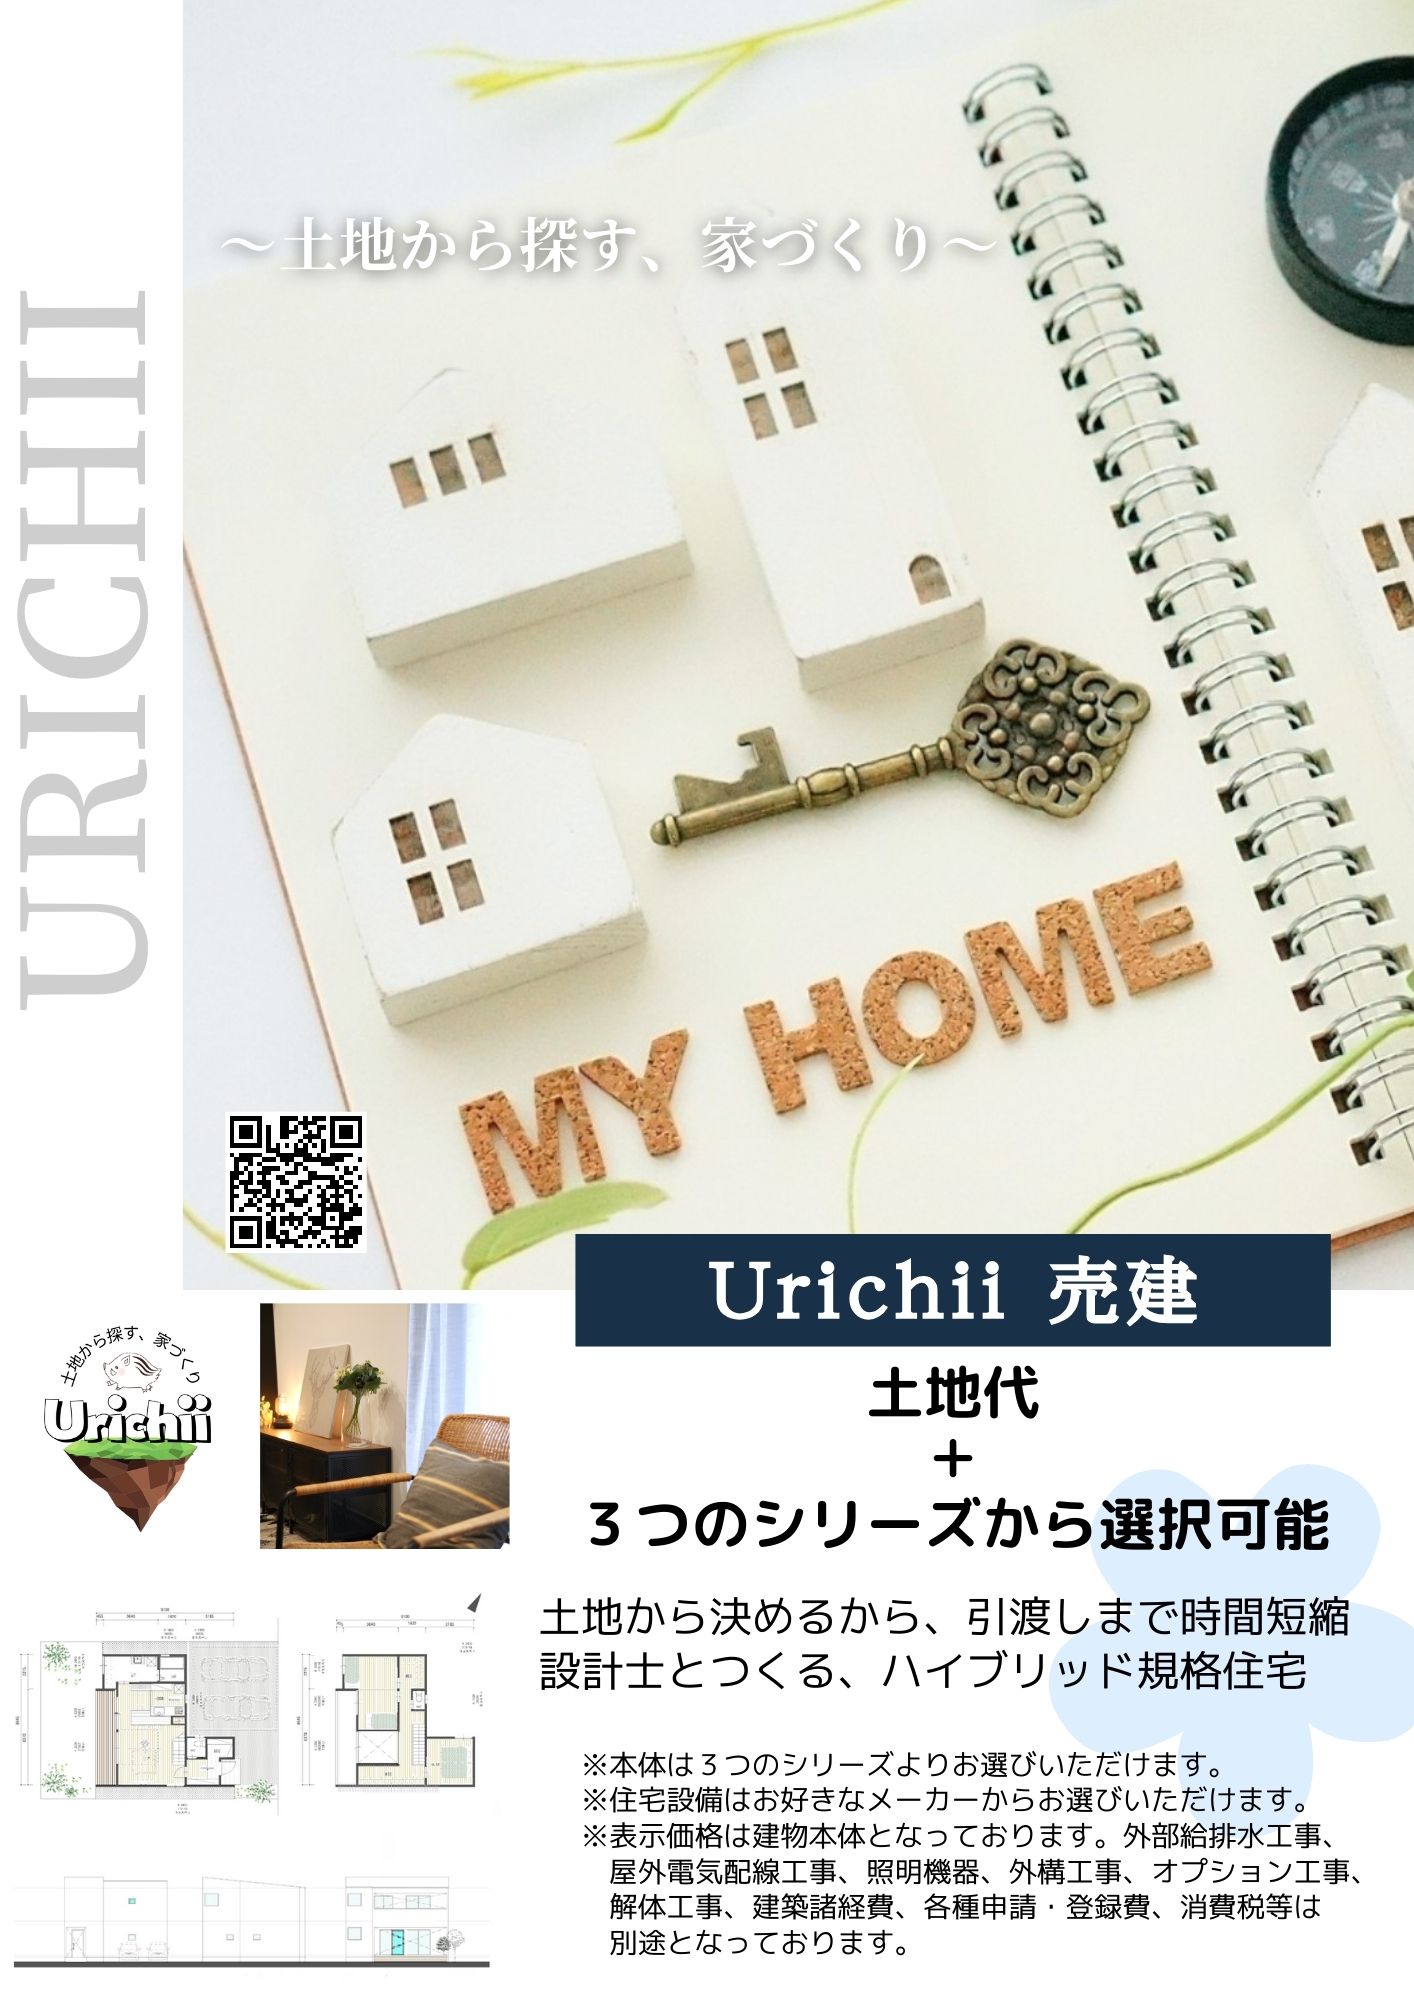 Urichii-3